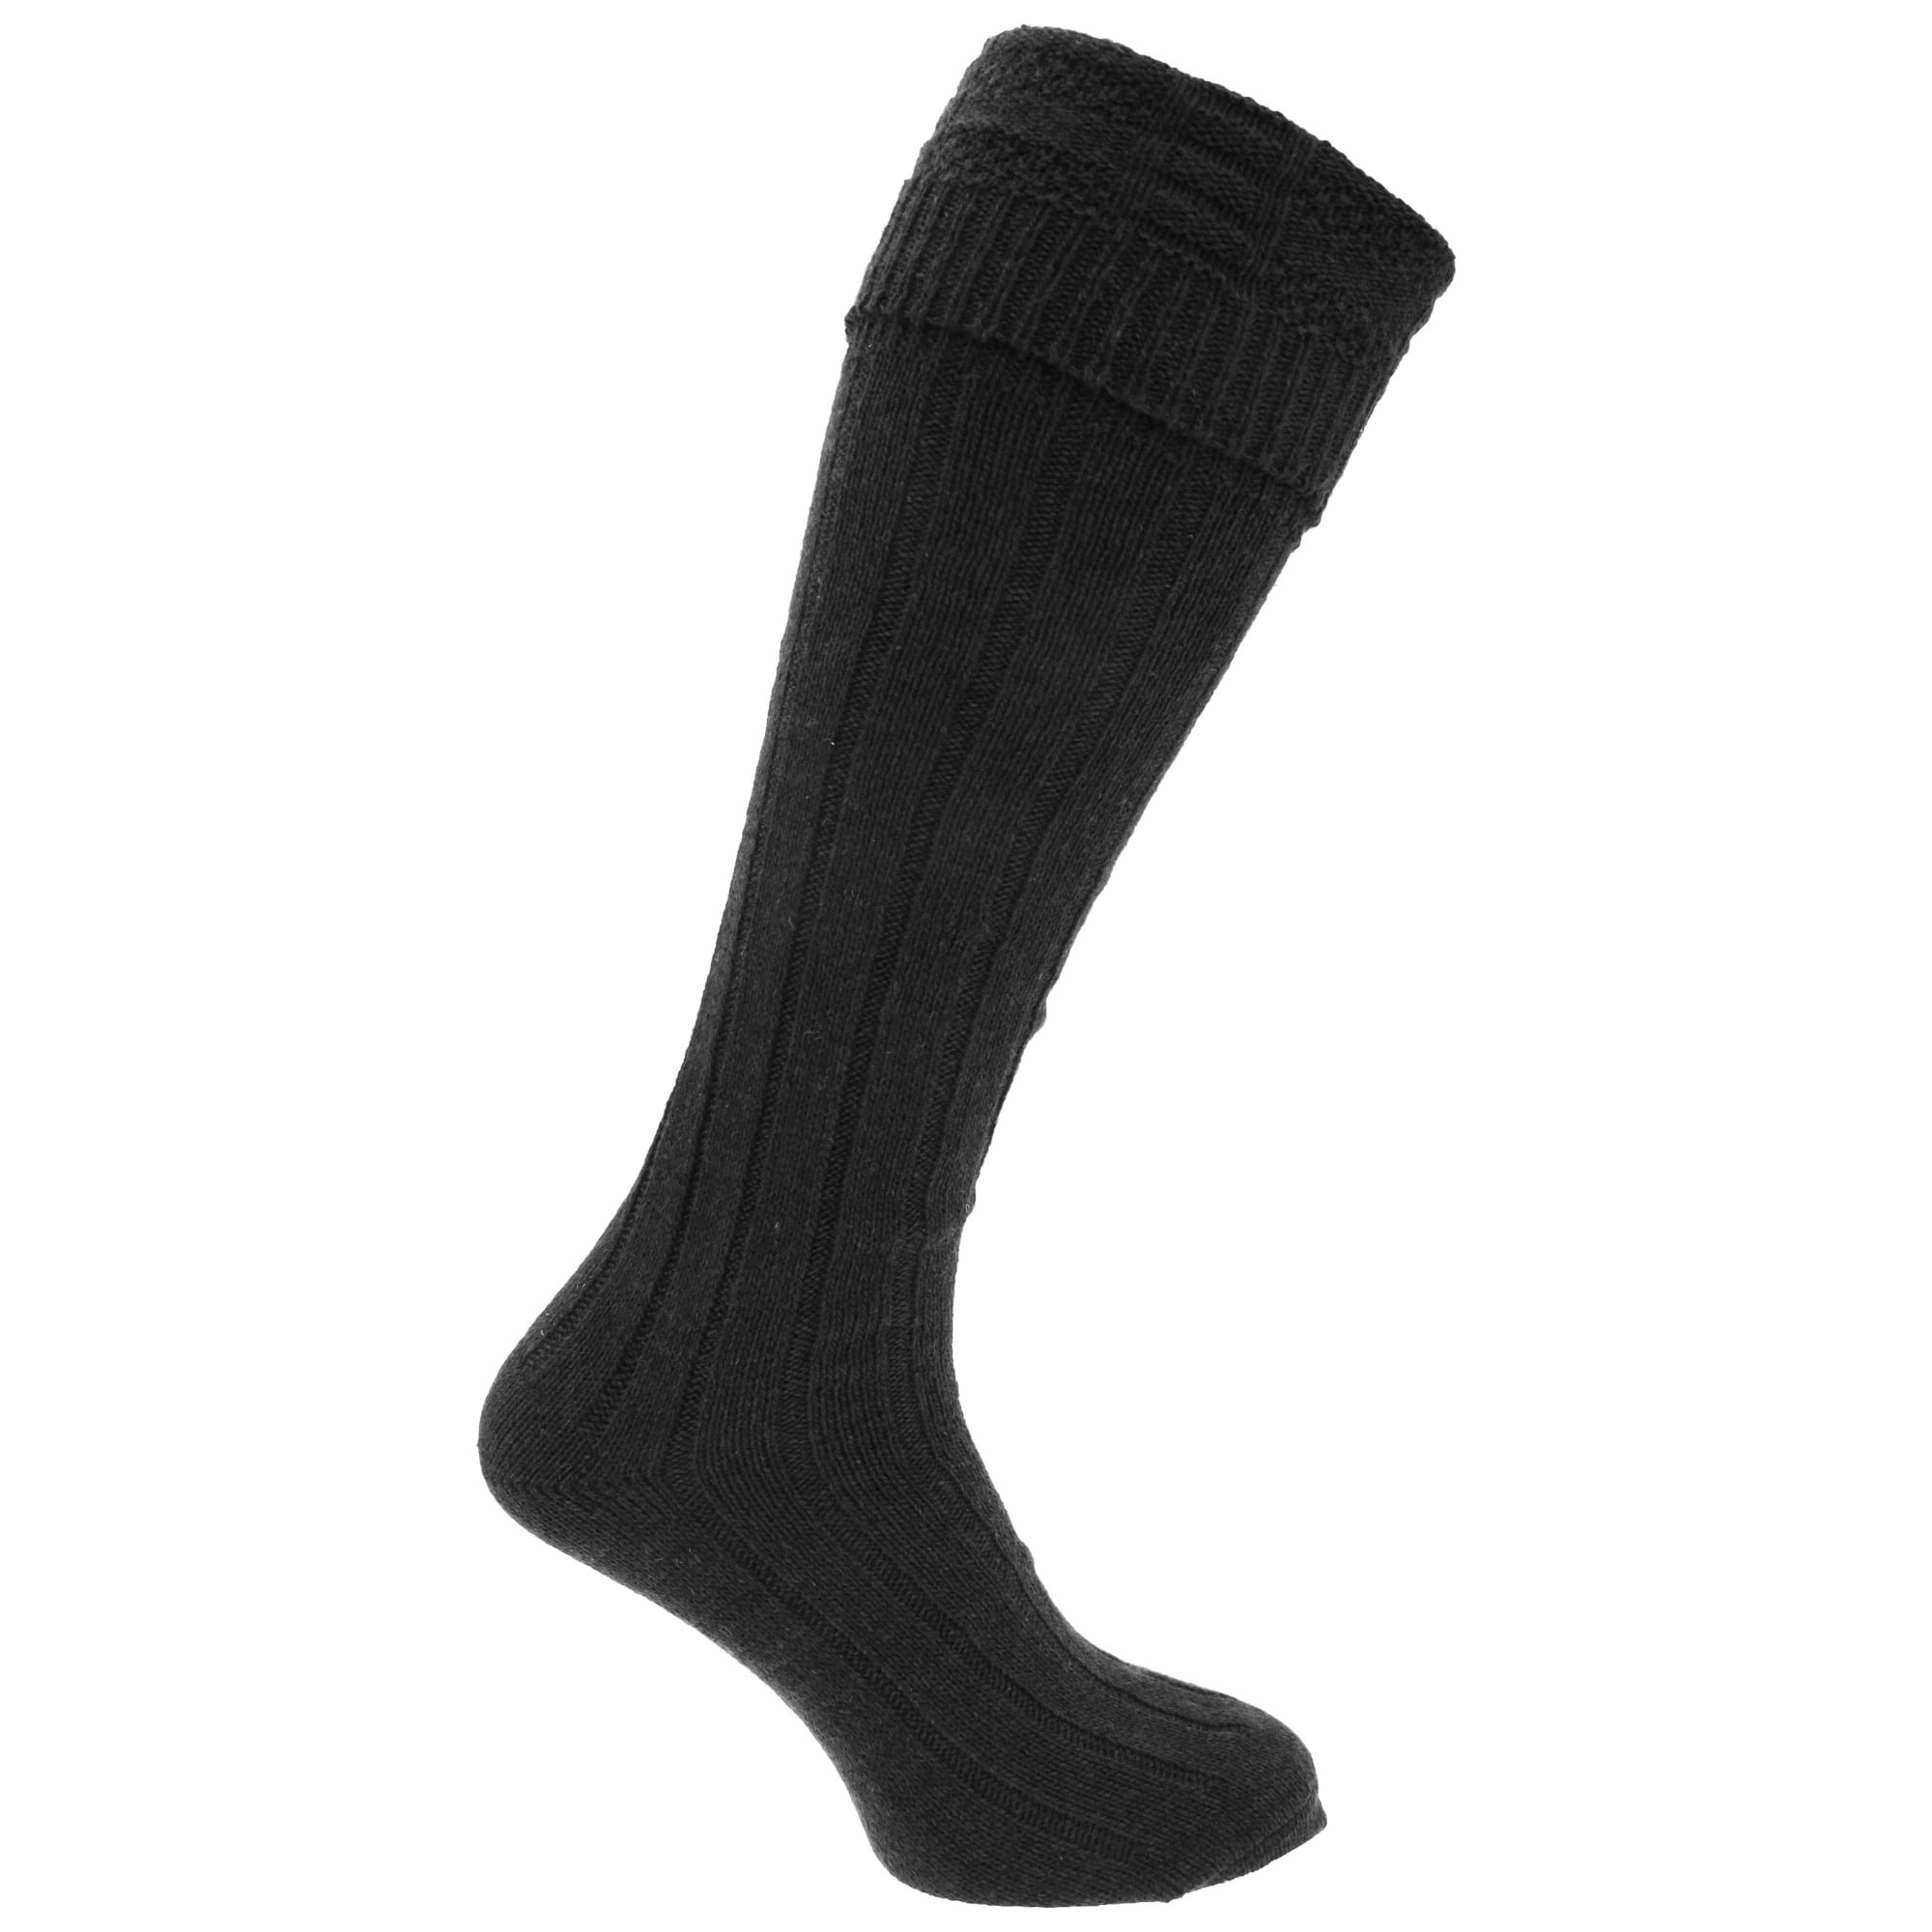 3 Colours Men's Traditional 65% Wool Blend Long Hose Kilt Socks 6-11 EUR 39-45 